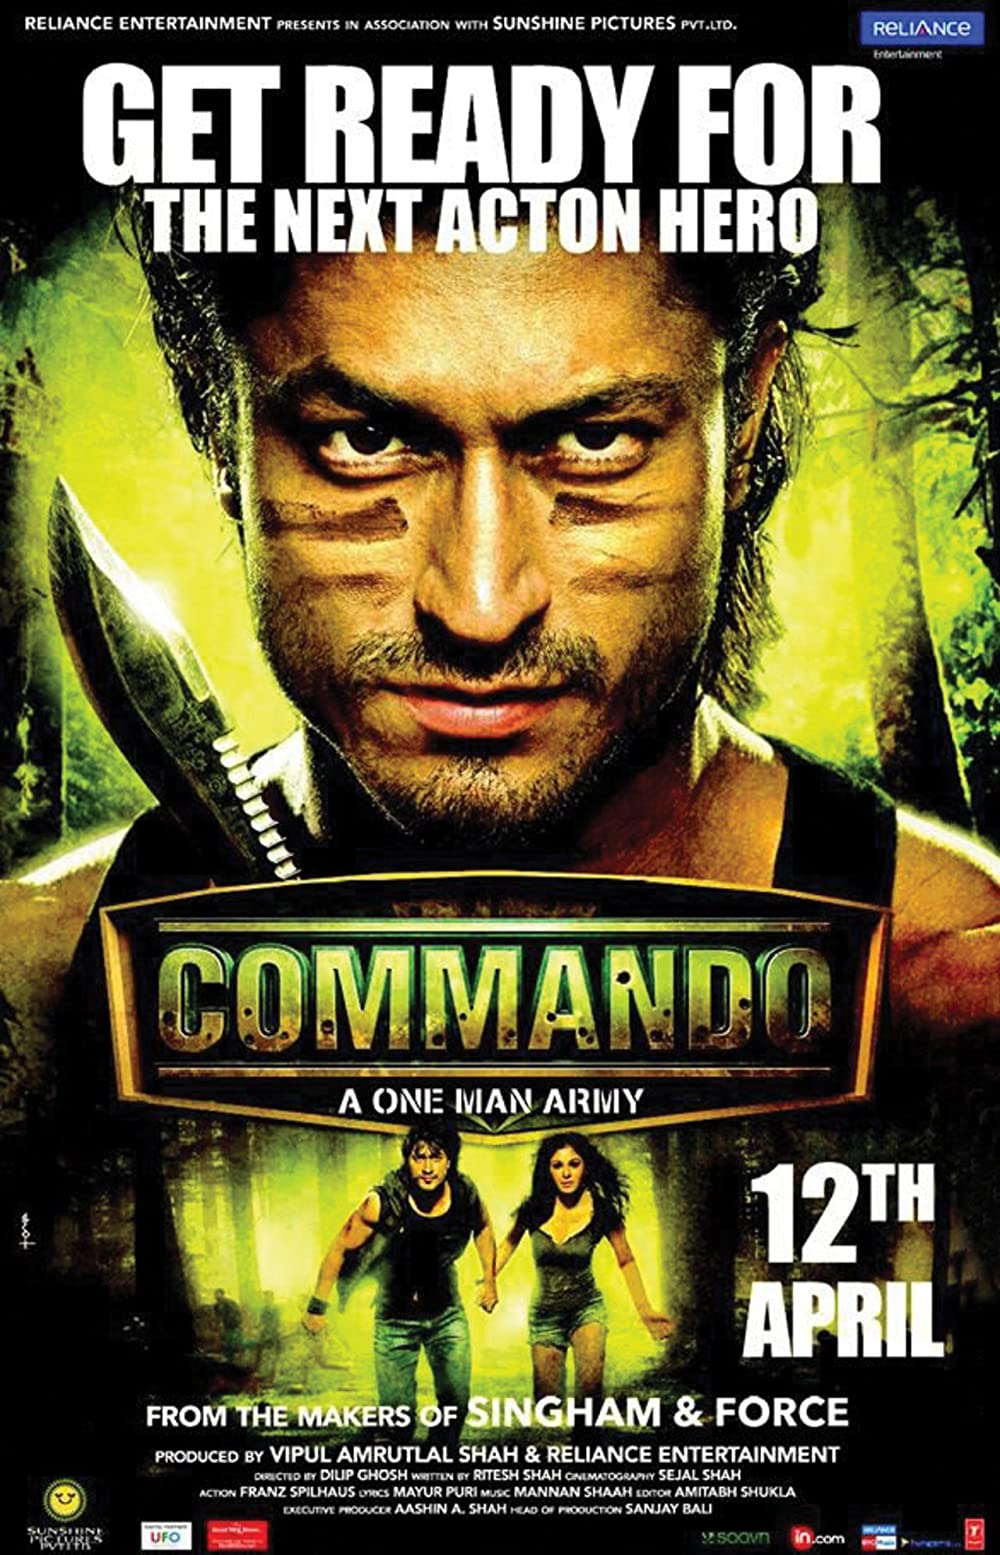 ดูหนังออนไลน์ฟรี ดูหนังฟรี Commando 2013 พากย์ไทย